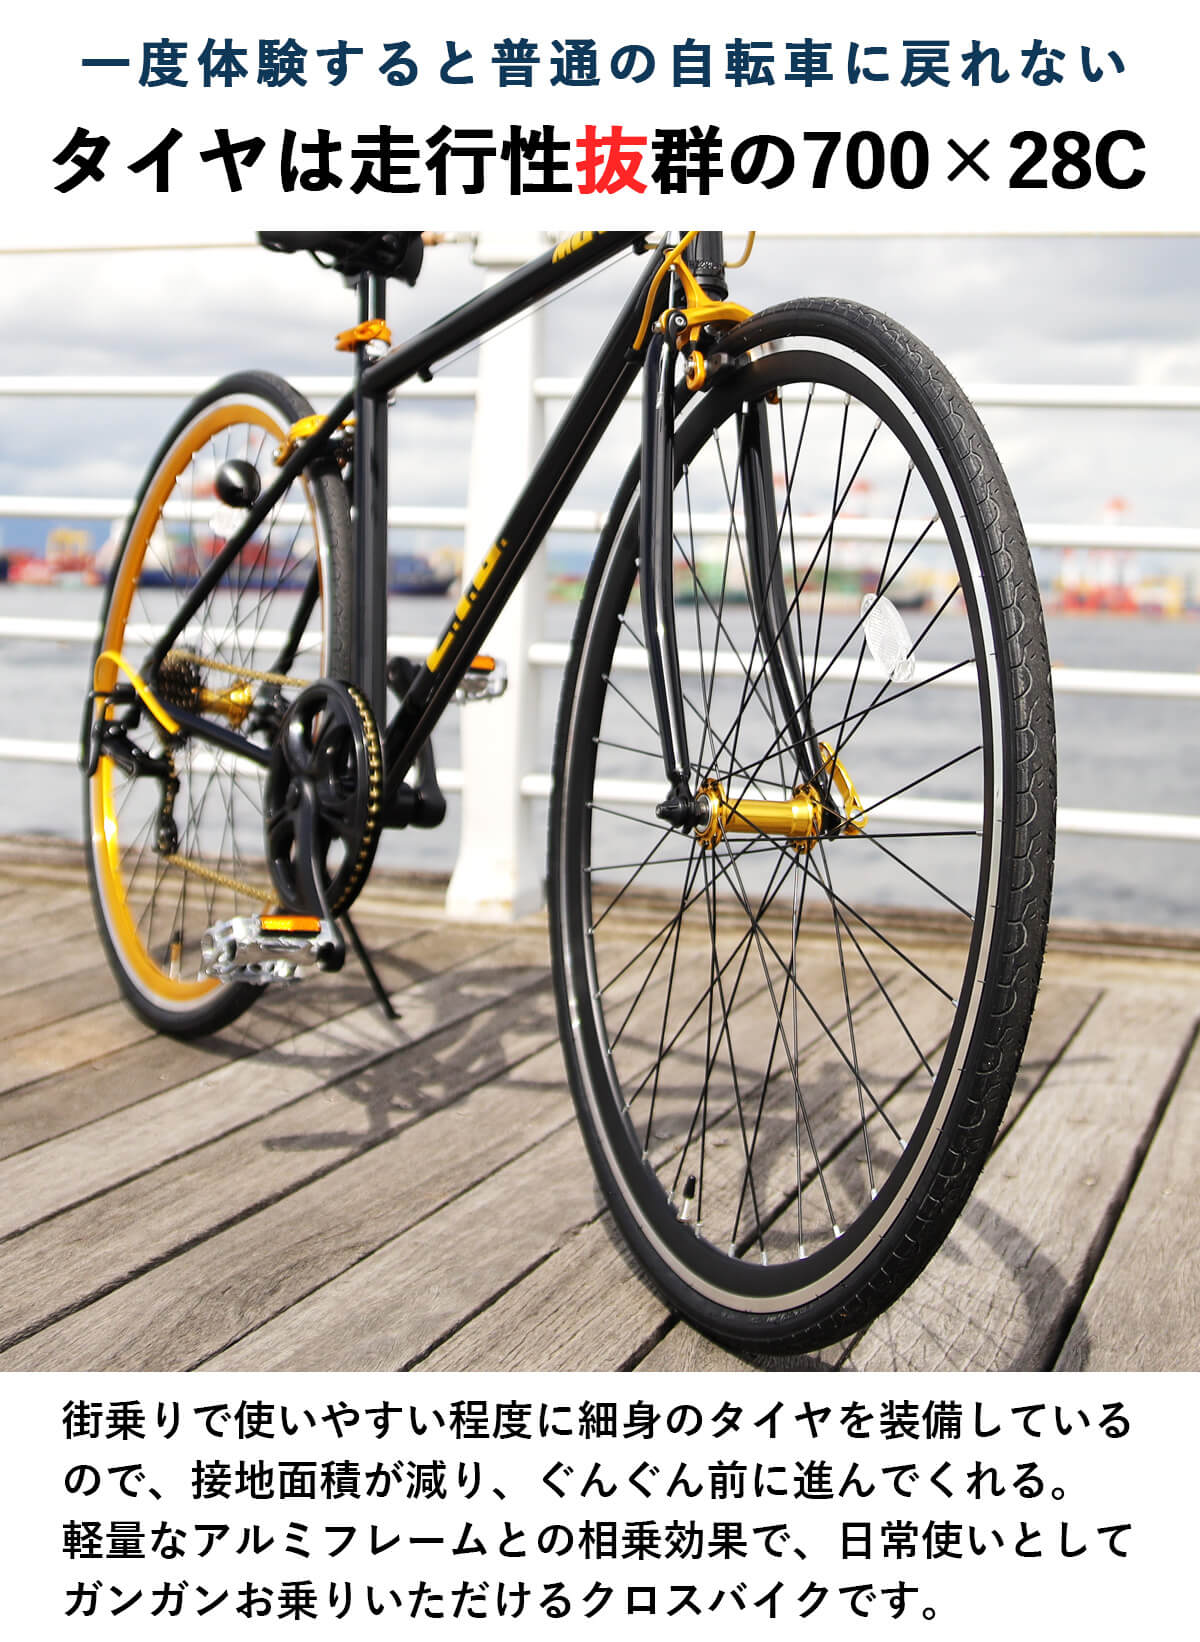 【楽天市場】【365日出荷可能】クロスバイク 自転車 700×28C